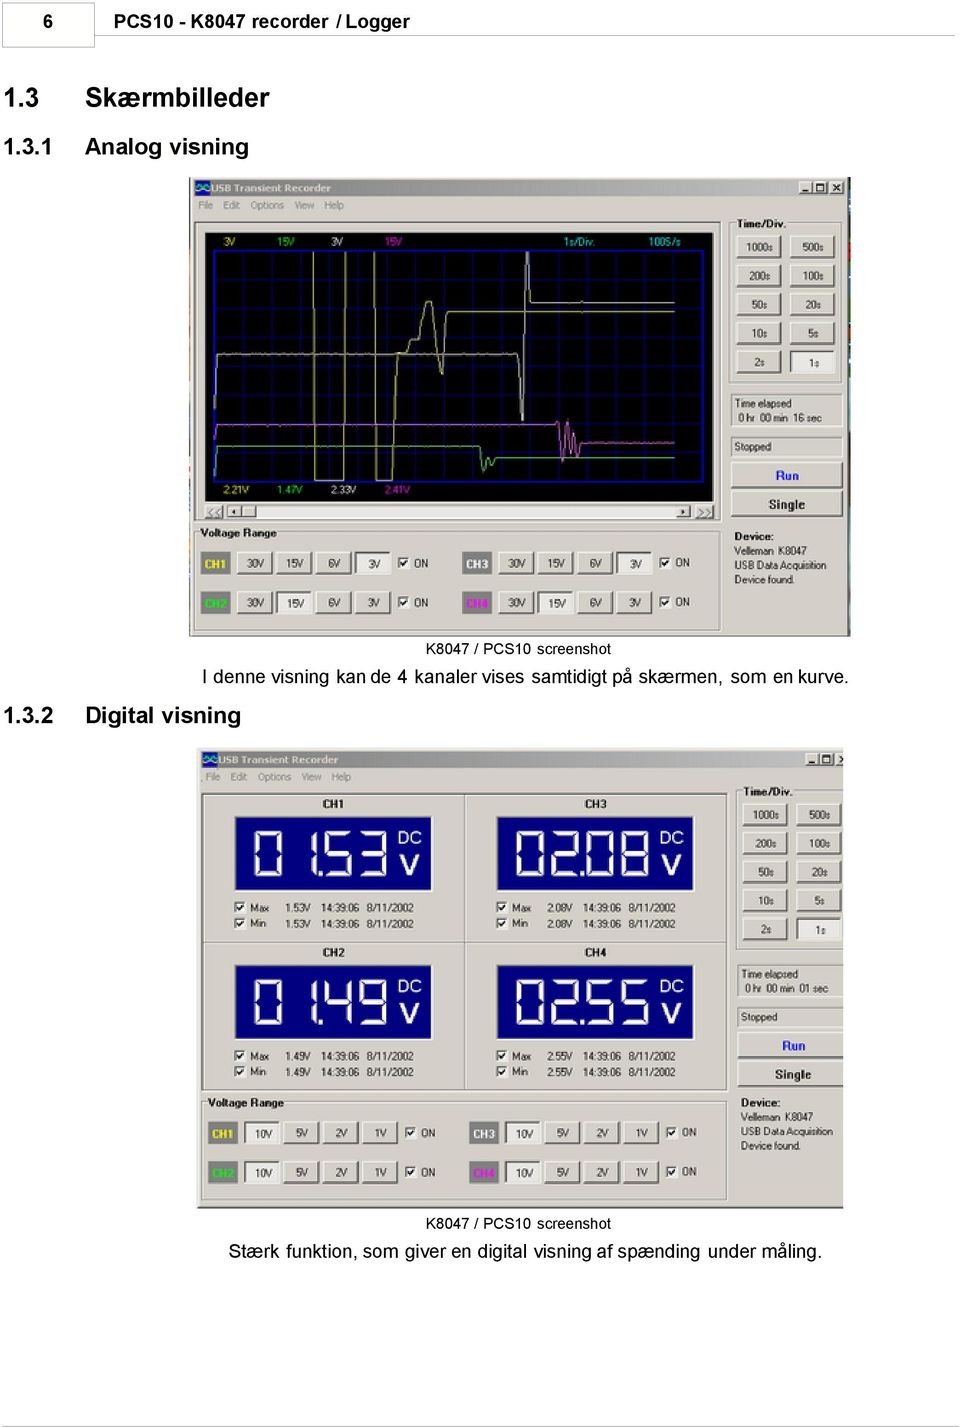 1 Analog visning K8047 / PCS10 screenshot I denne visning kan de 4